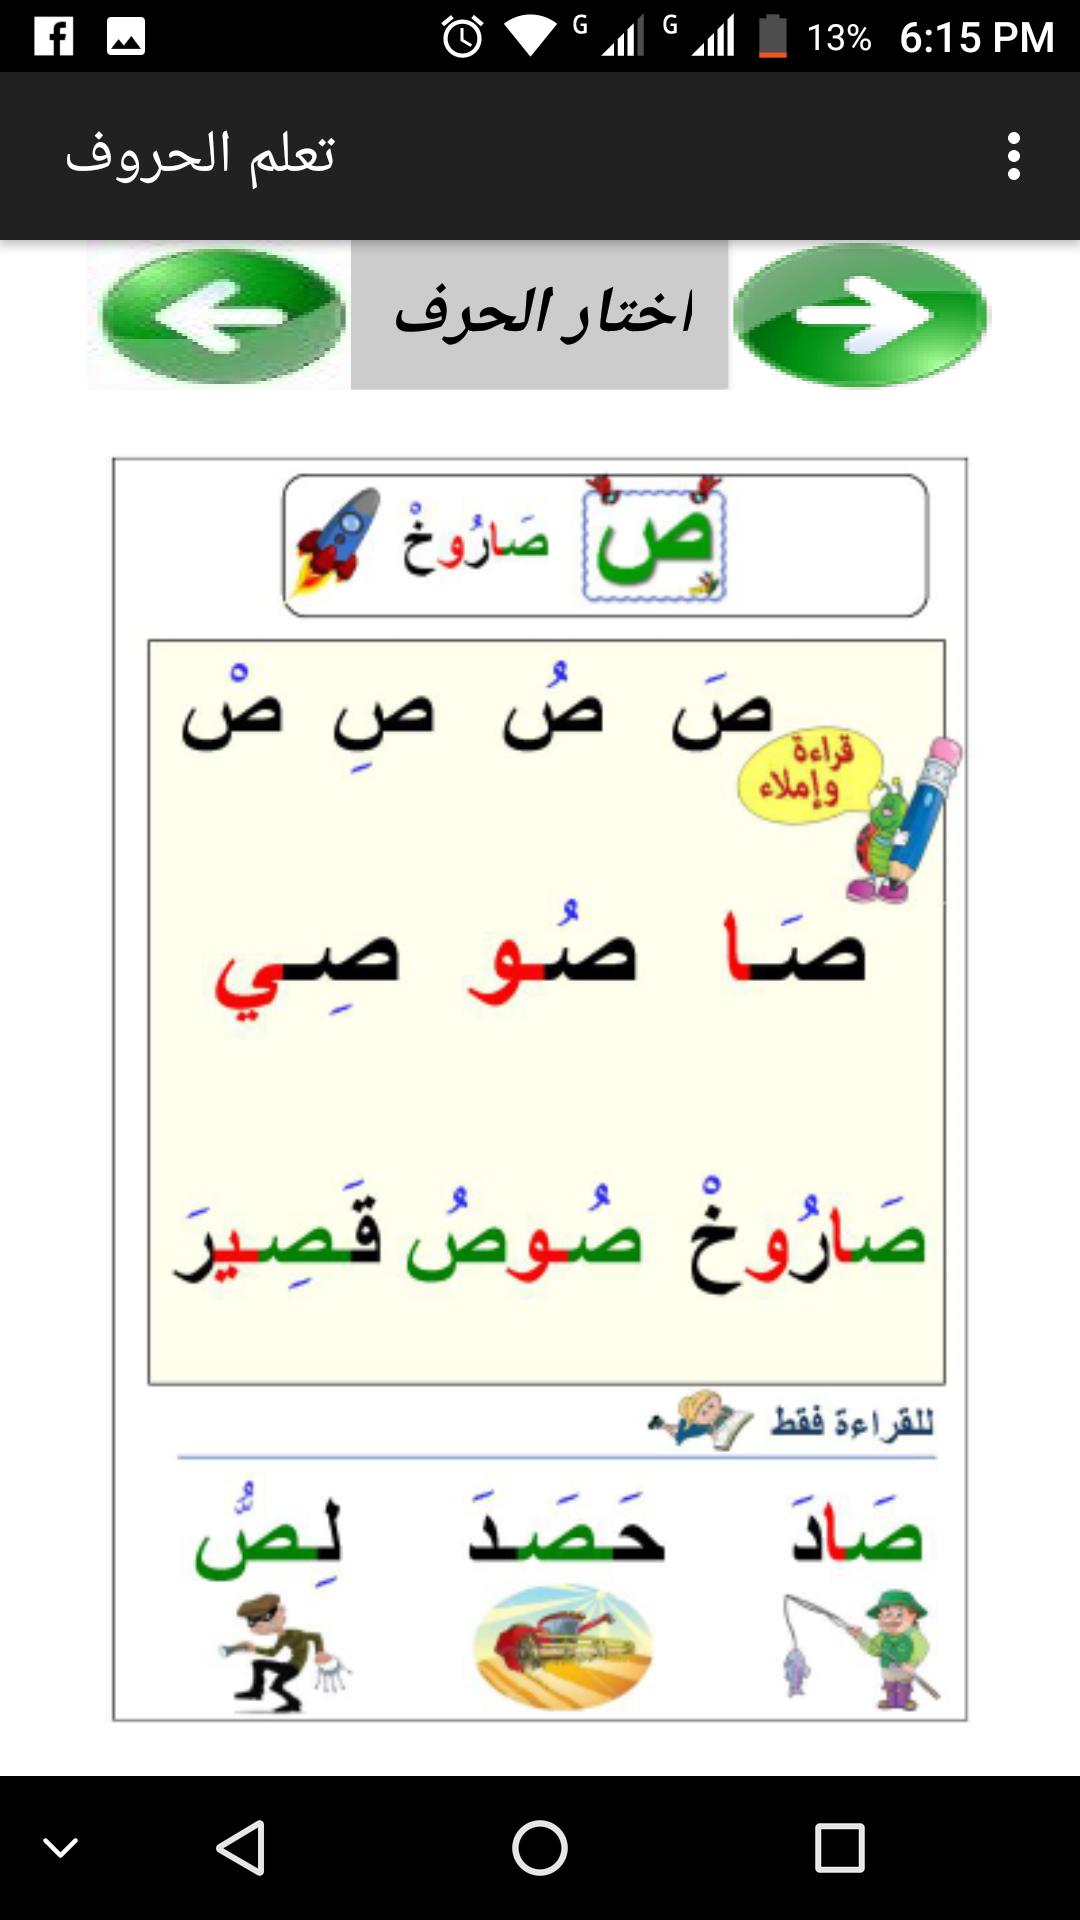 تعلم القراءة و التهجئة و الحروف العربية for Android - APK Download